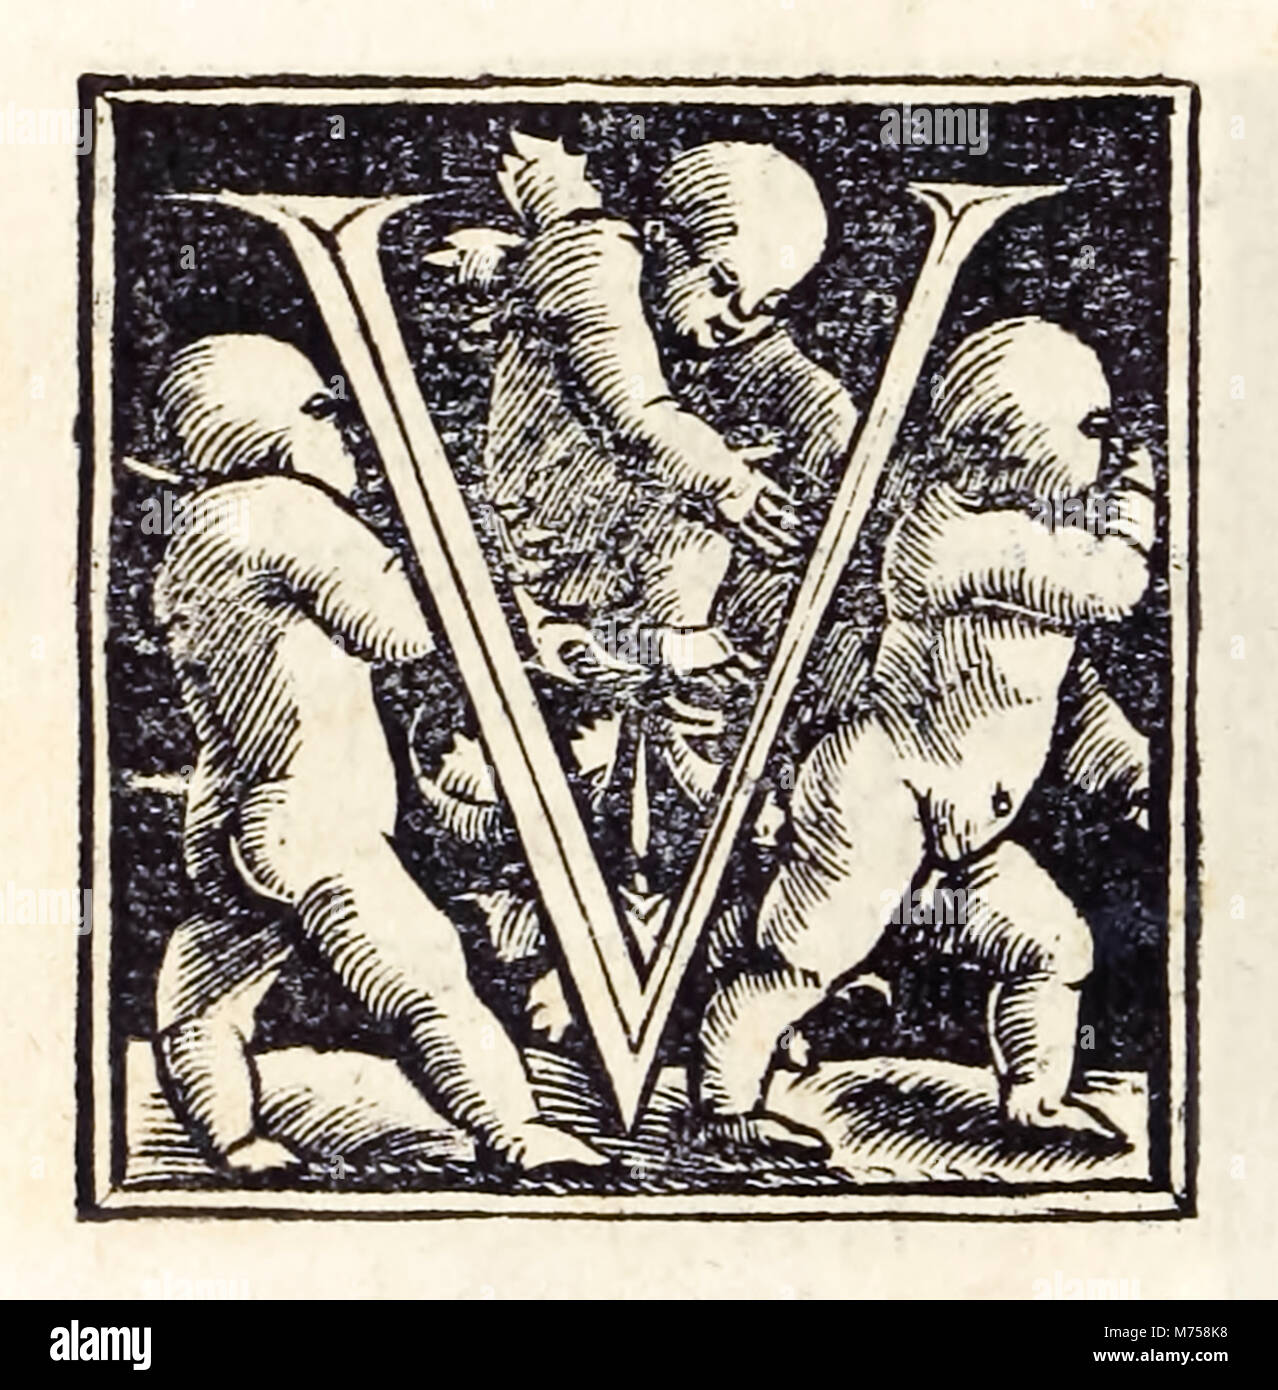 Allumé en 'V' de la troisième édition de Bâle 1518 'Utopia' par Sir Thomas More (1478-1535) d'abord publié en 1516. Gravure sur bois par Hans Holbein le Jeune (c.1497-1543). Voir plus d'informations ci-dessous. Banque D'Images